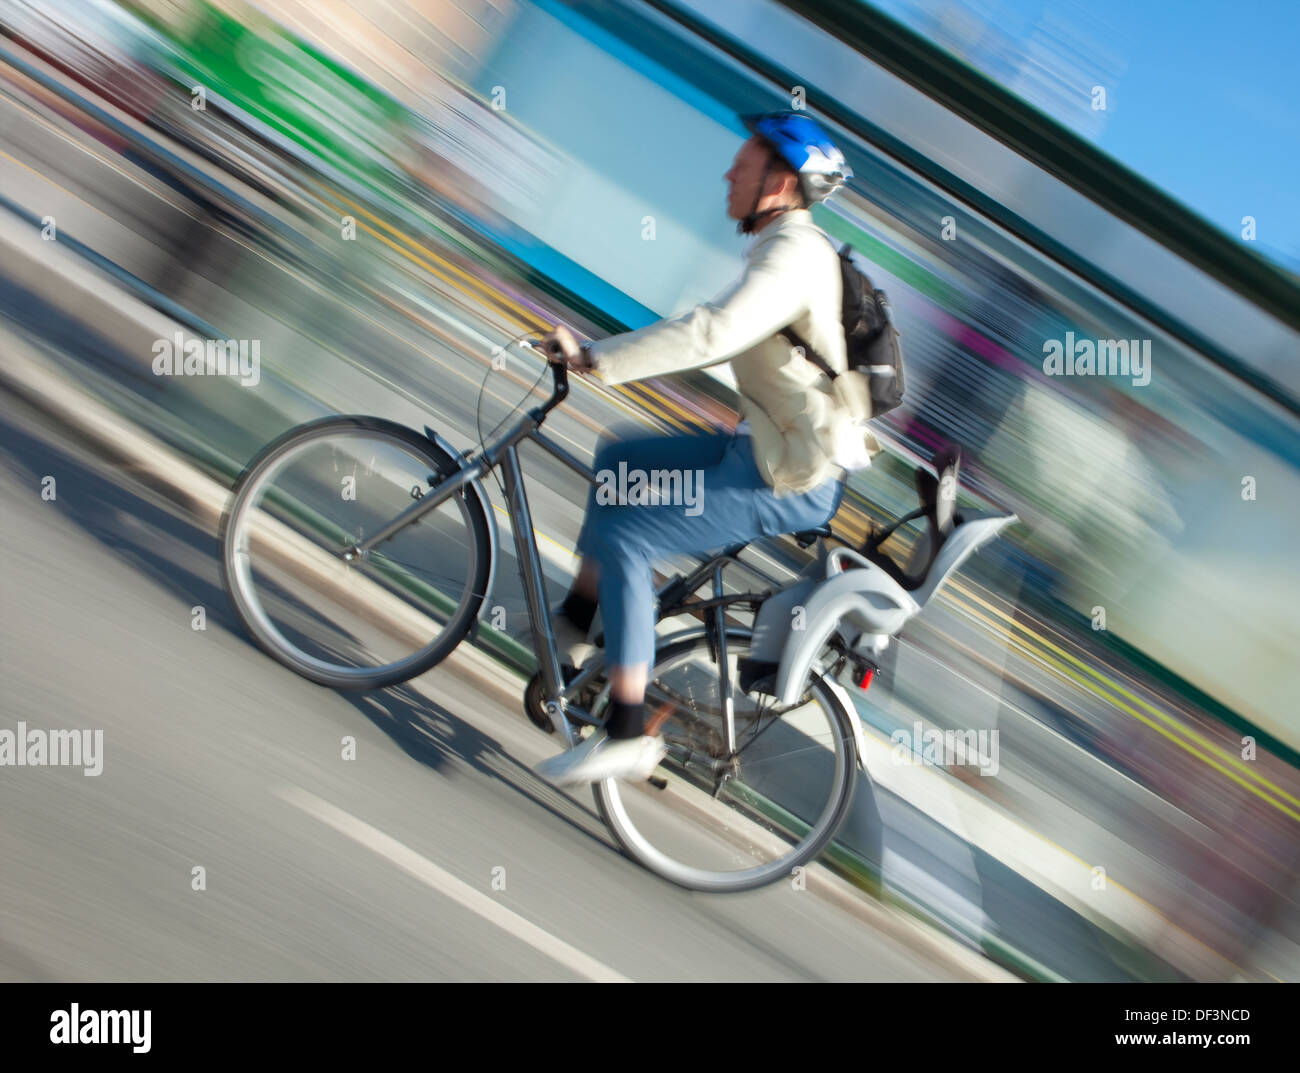 Stoccolma, Svezia - ciclista in una pista ciclabile Foto Stock